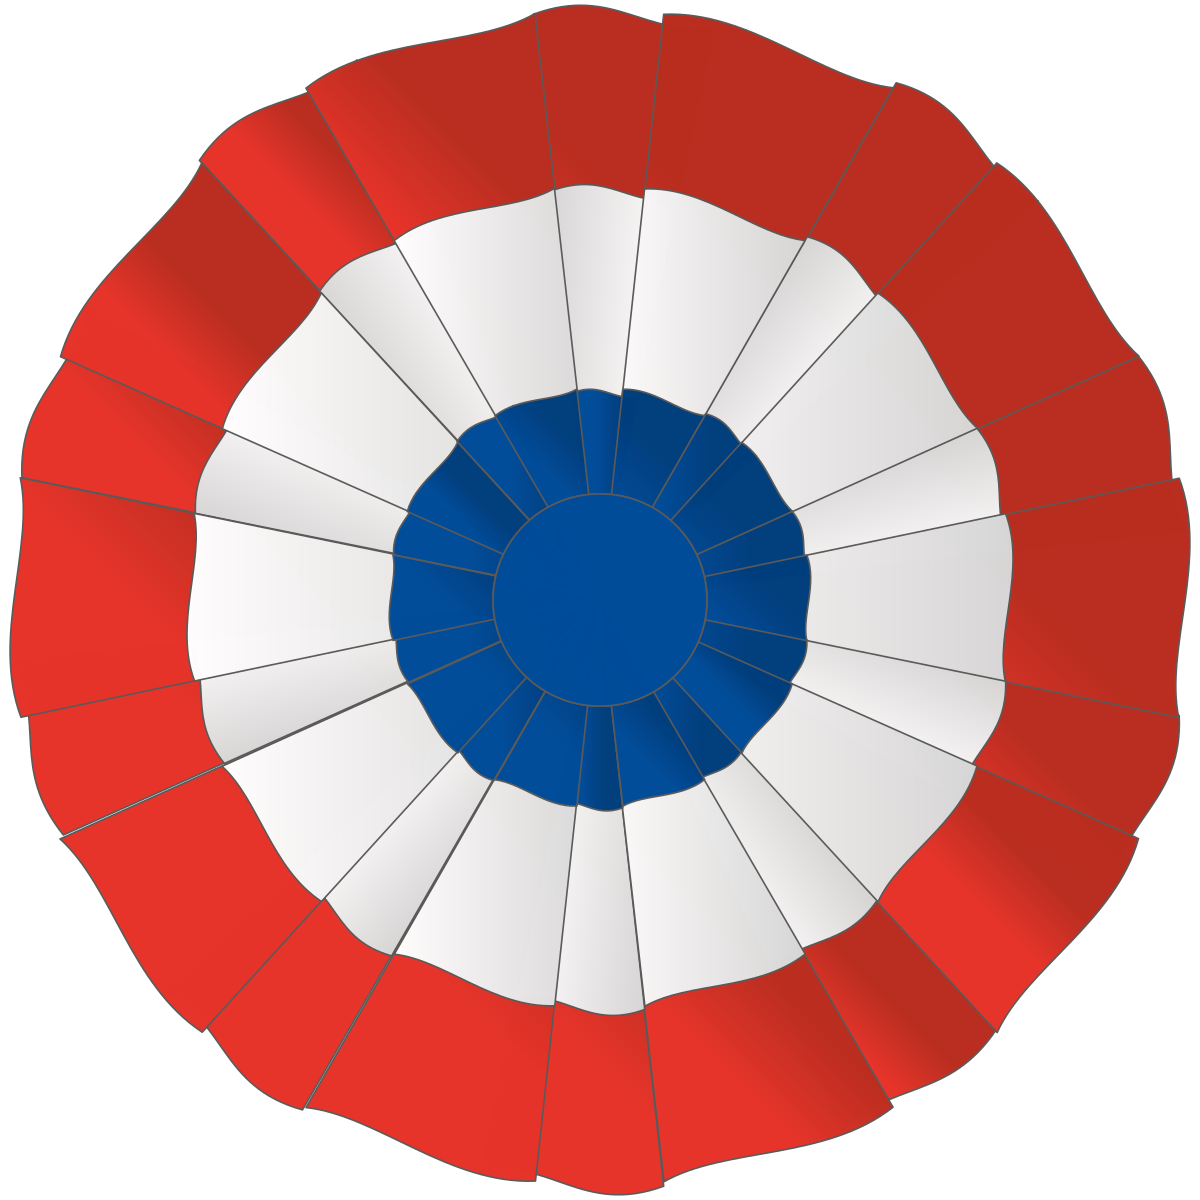 Coccarda francese tricolore - Wikipedia